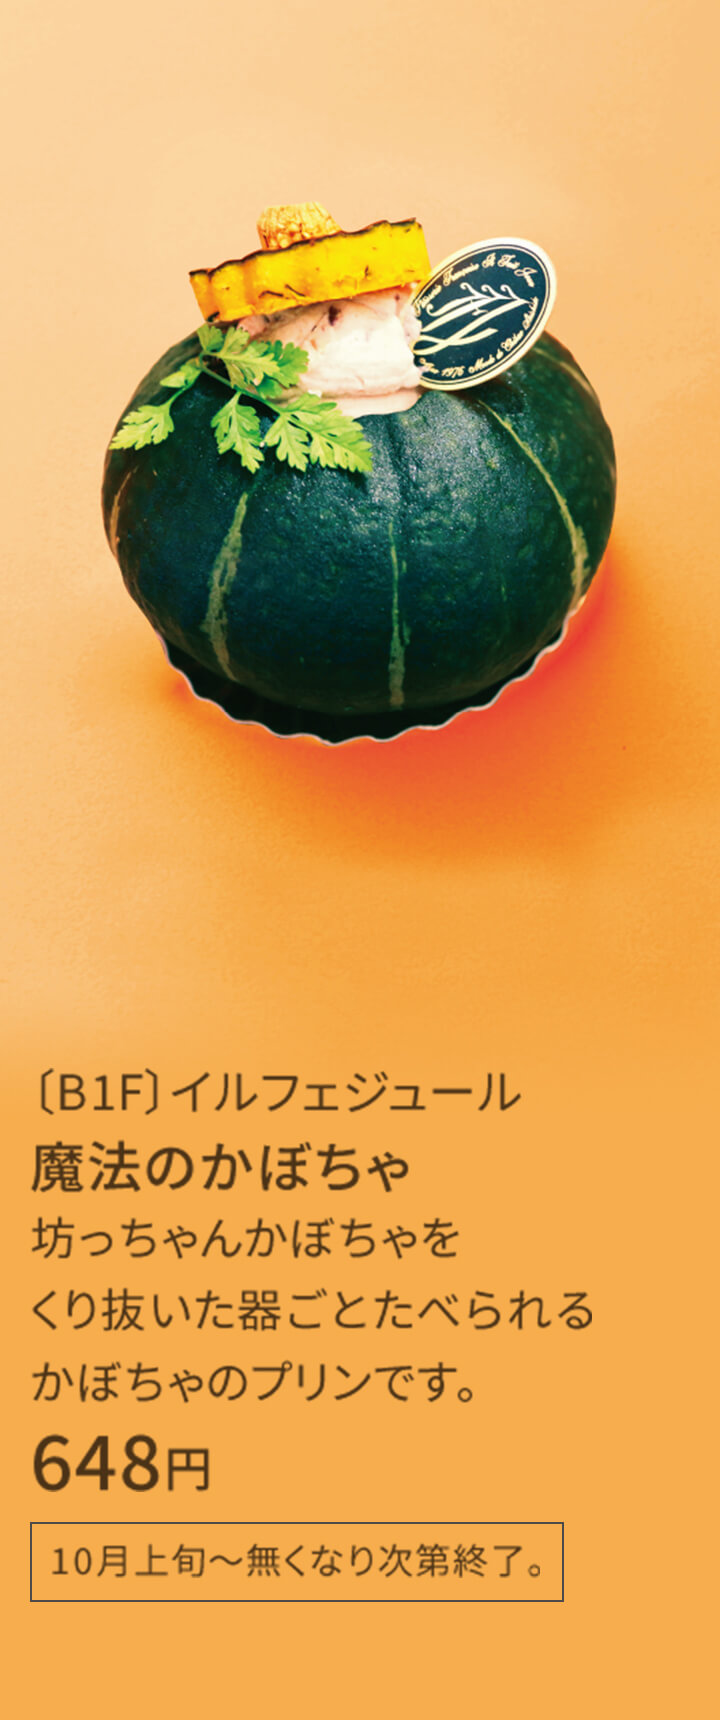 〔B1F〕イルフェジュール 魔法のかぼちゃ 坊っちゃんかぼちゃをくり抜いた器ごとたべられるかぼちゃのプリンです。 0,000円 10月上旬～無くなり次第終了。